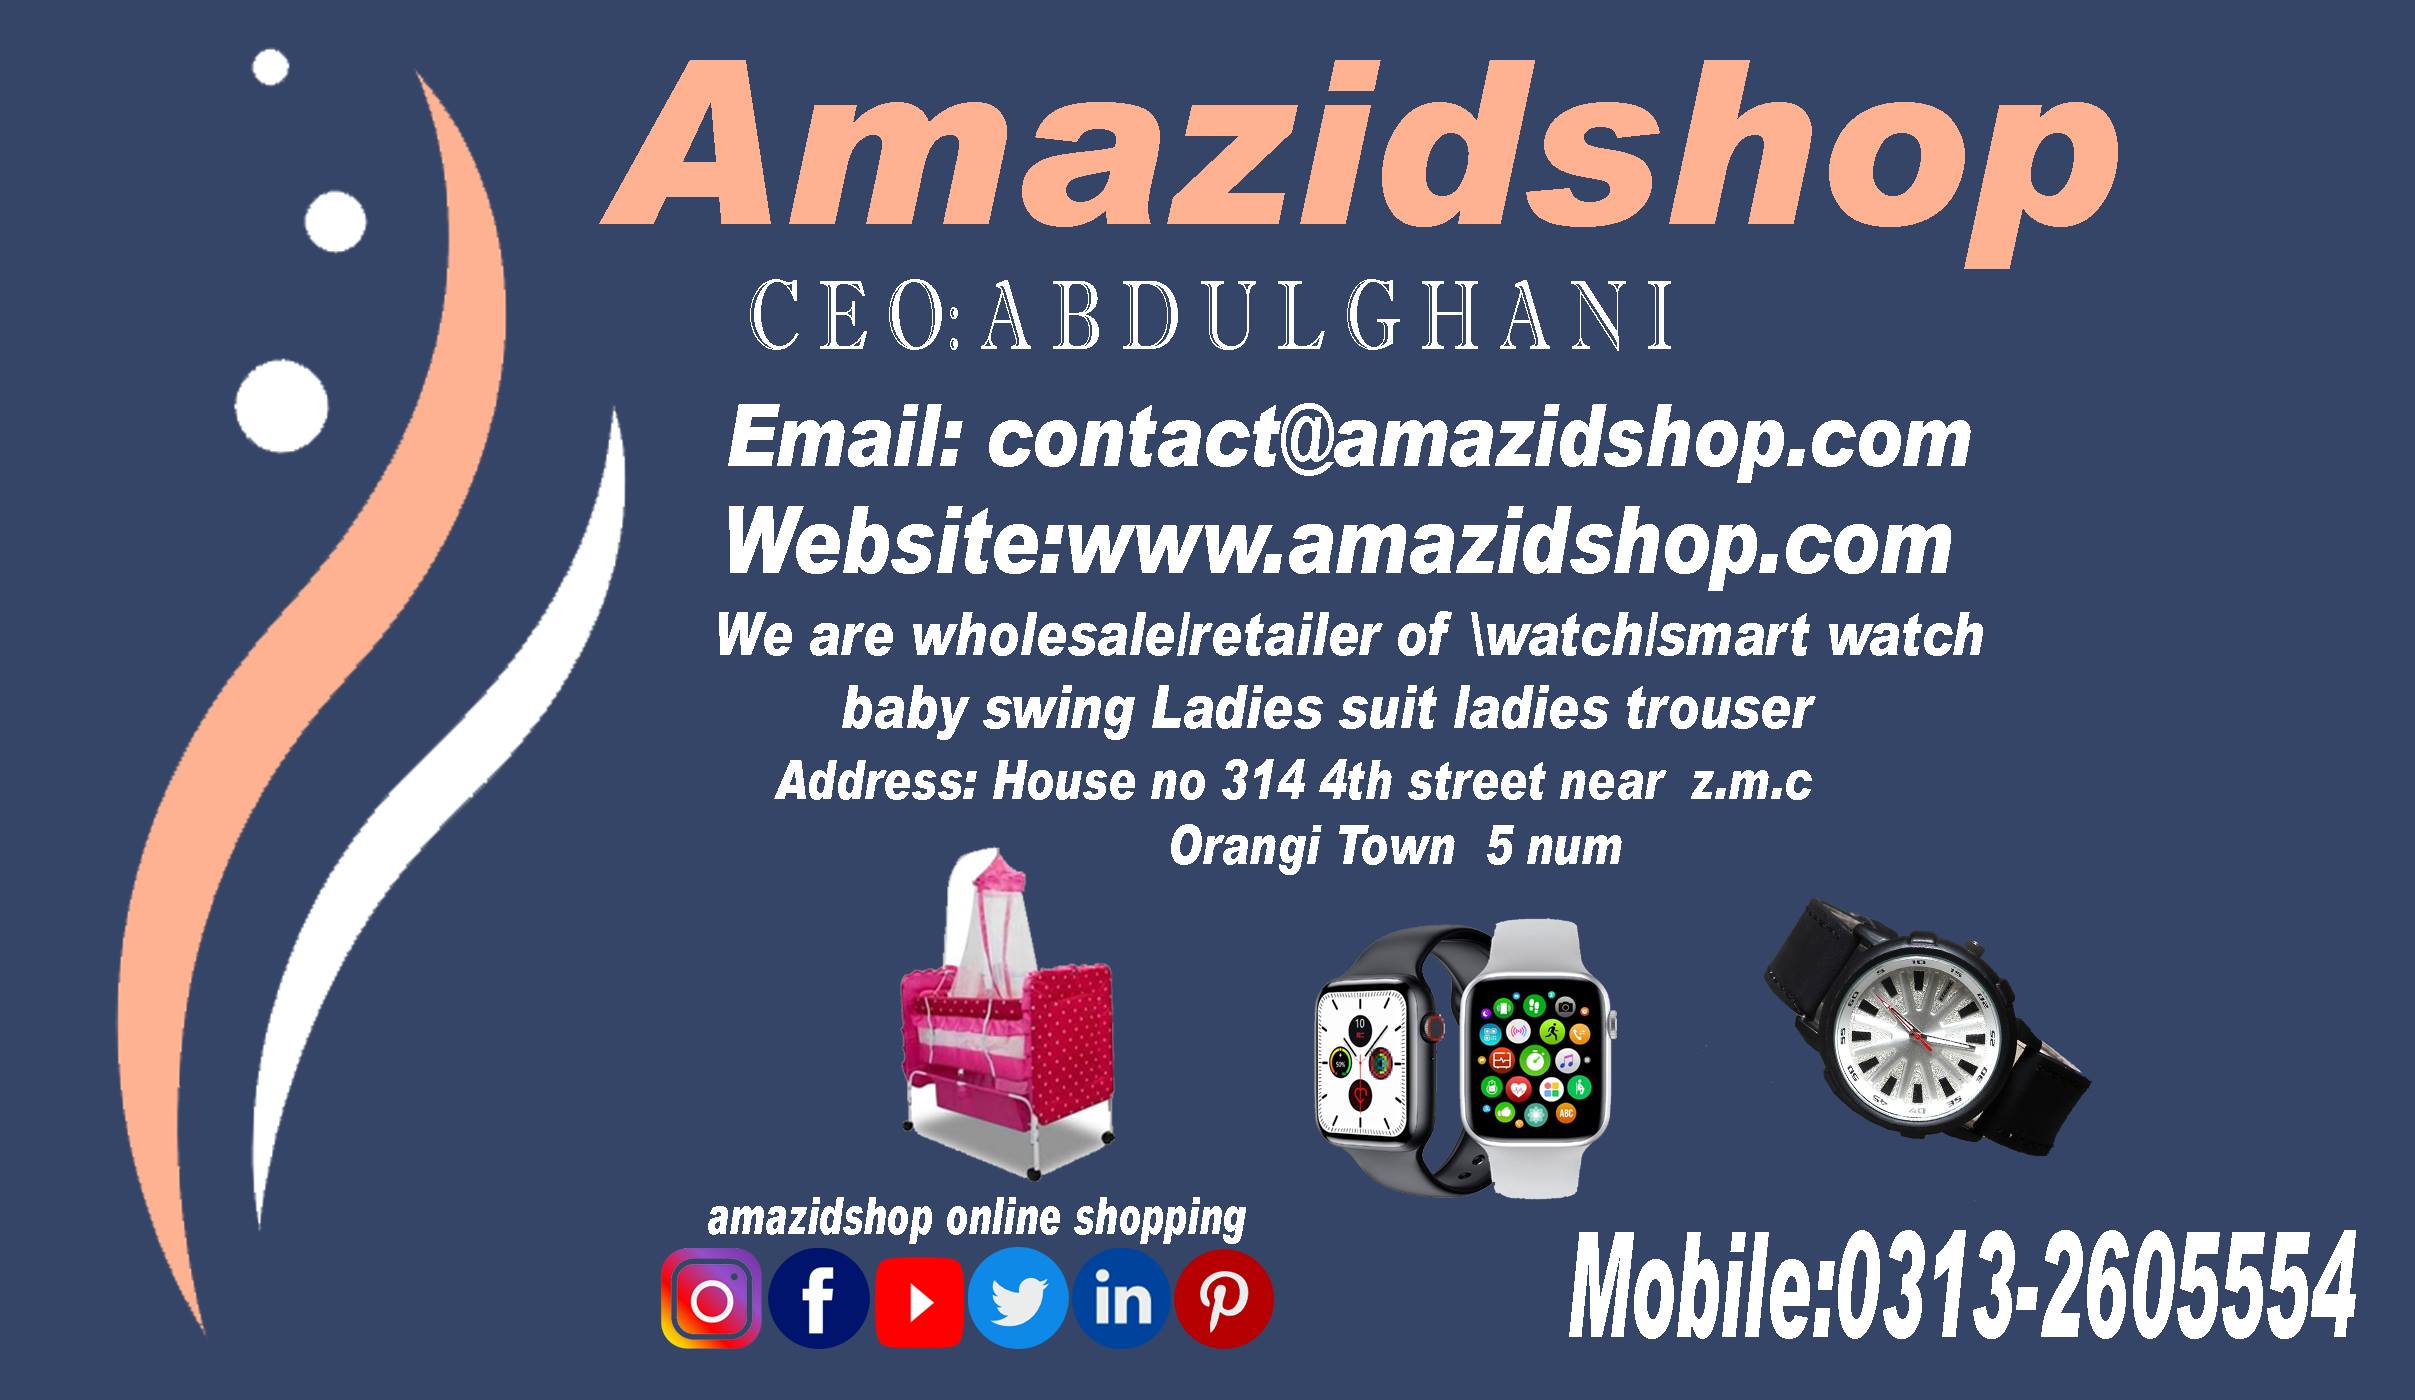 Amzidshop Online shoppig